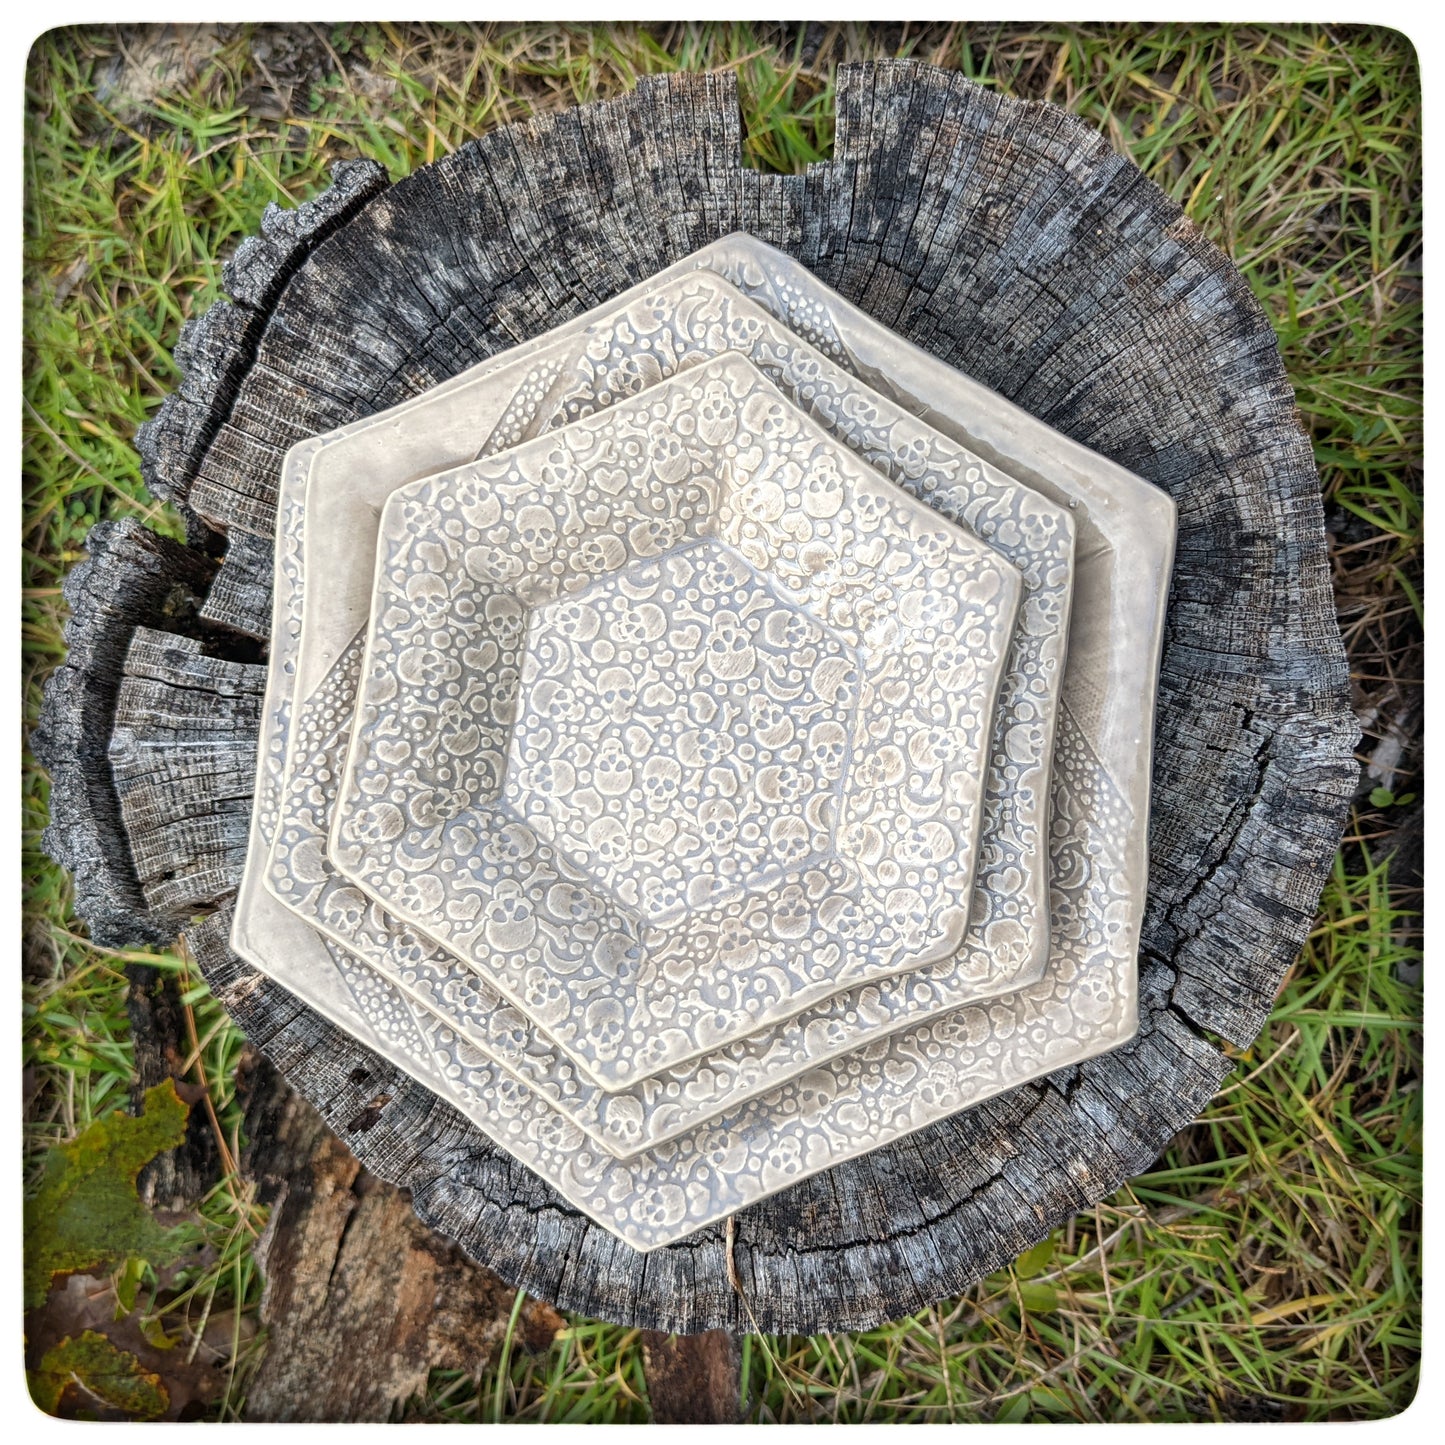 Skull hexagon dish (5.5 inch)